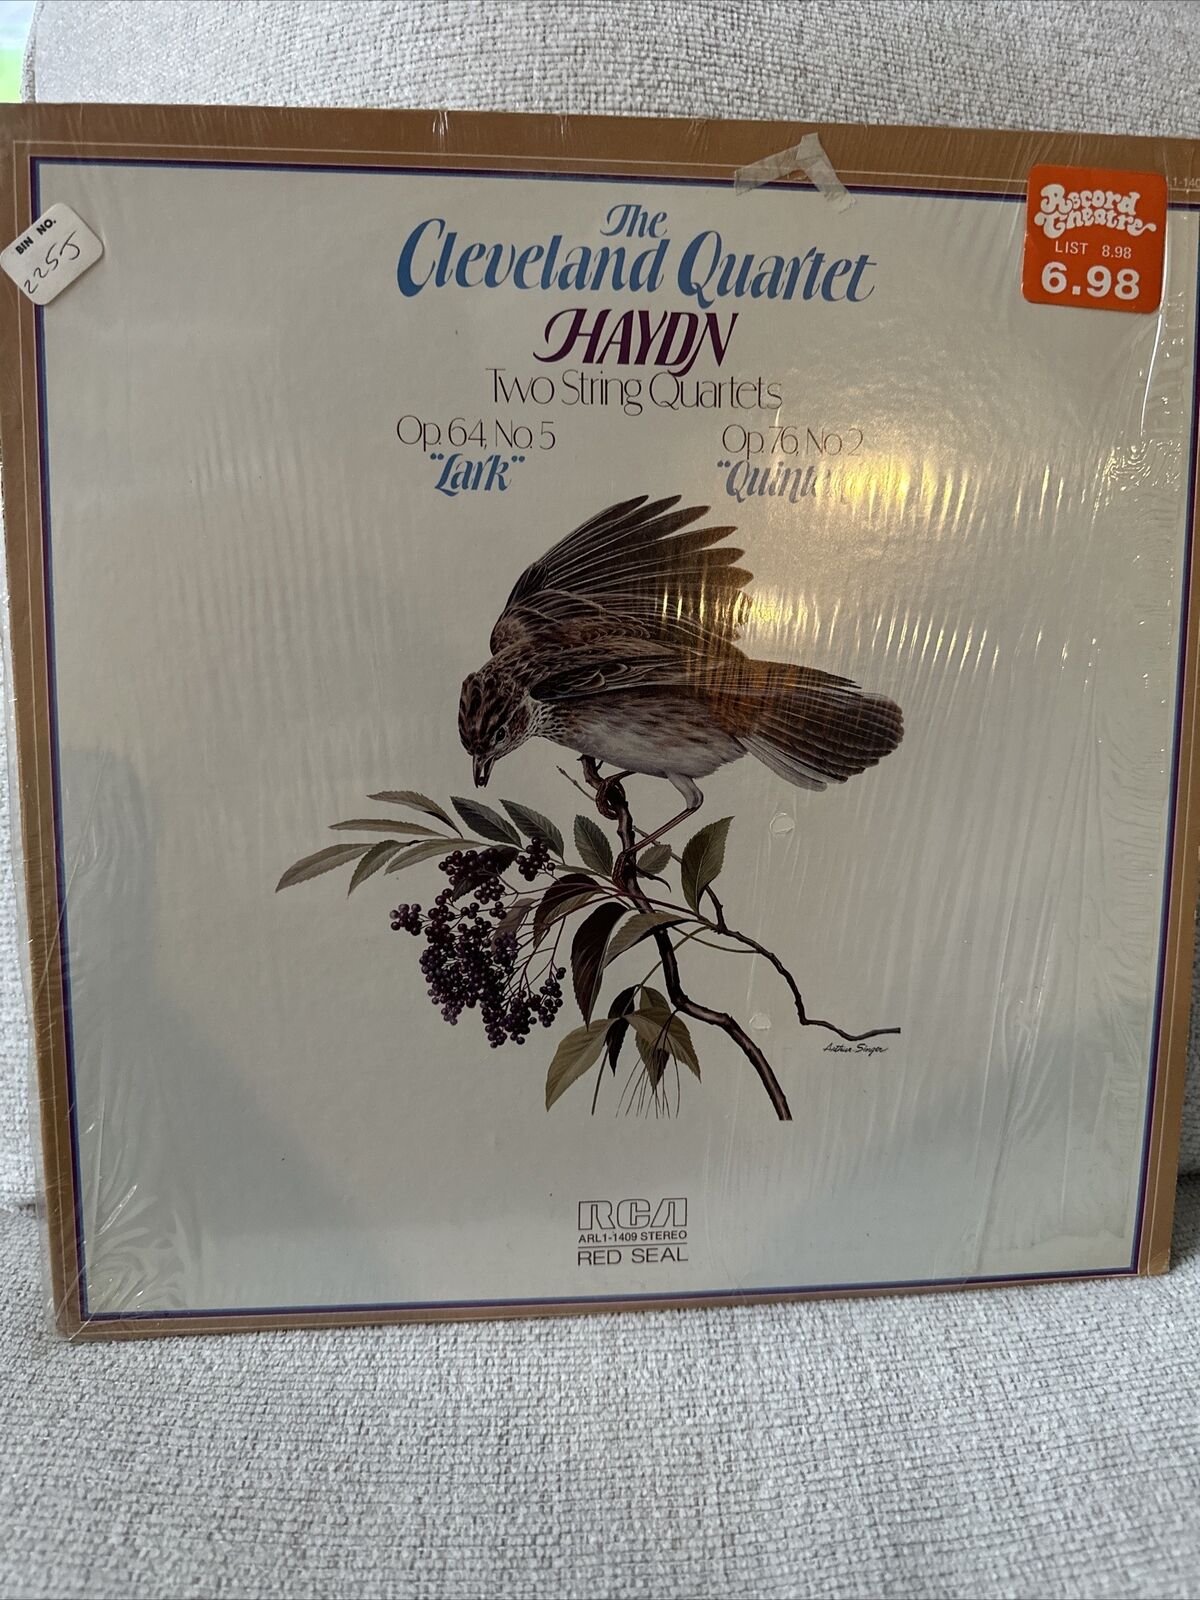 The CLEVELAND QUARTET – HAYDN Lark & Quinten VINTAGE Vinyl LP - RCA